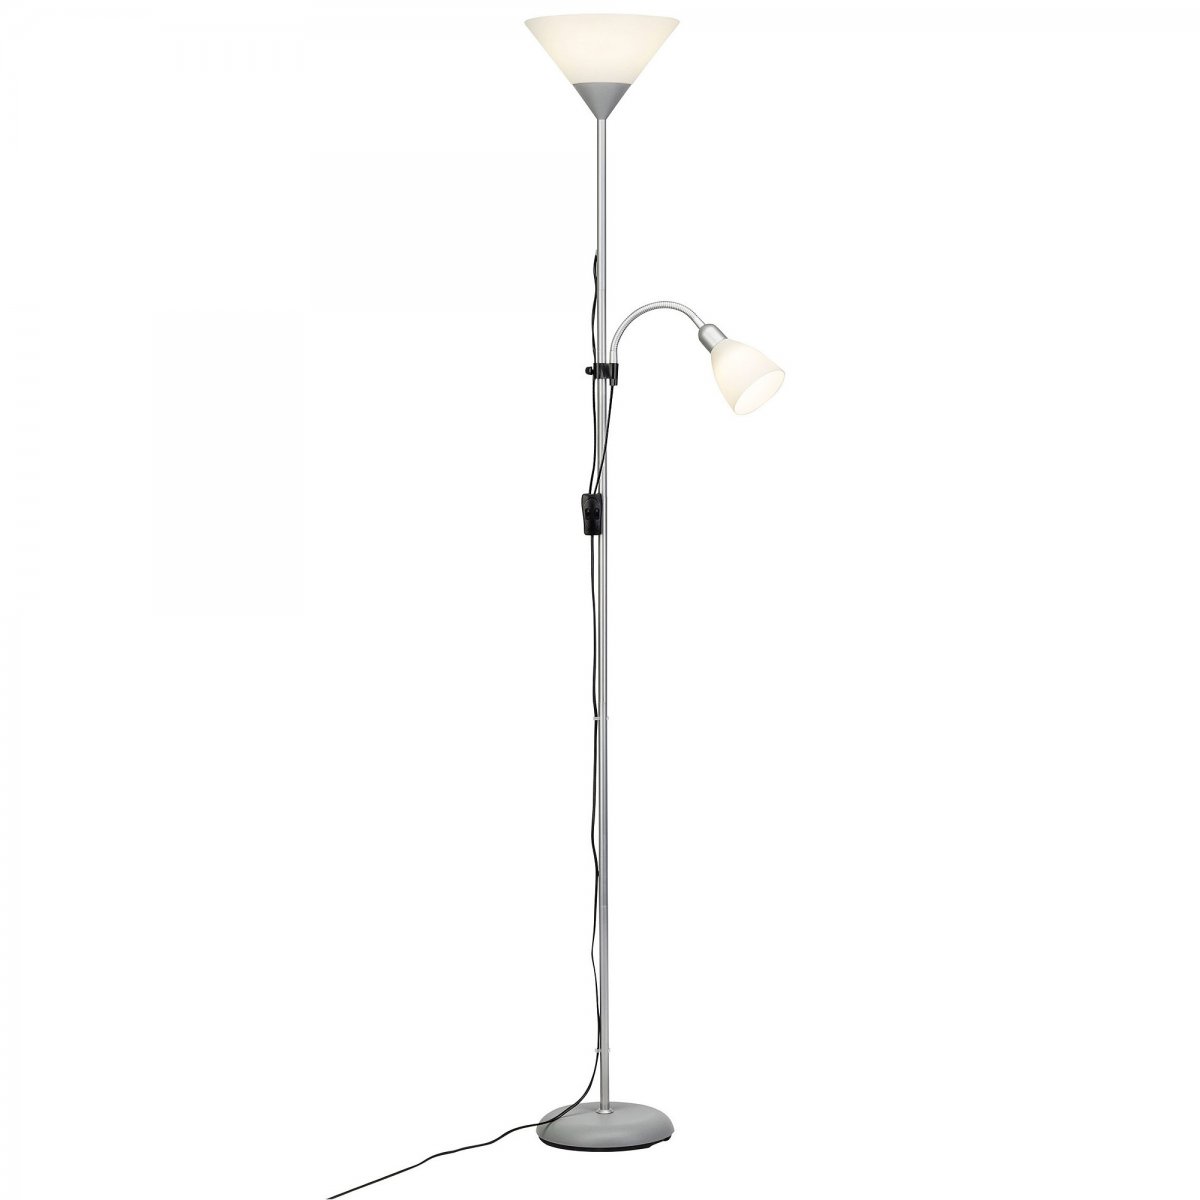 & LED Lampen G98811-05 No. mit Brilliant Deckenfluter silber --> Lesearm im kaufen Spari Leuchten Leuchten weiß online